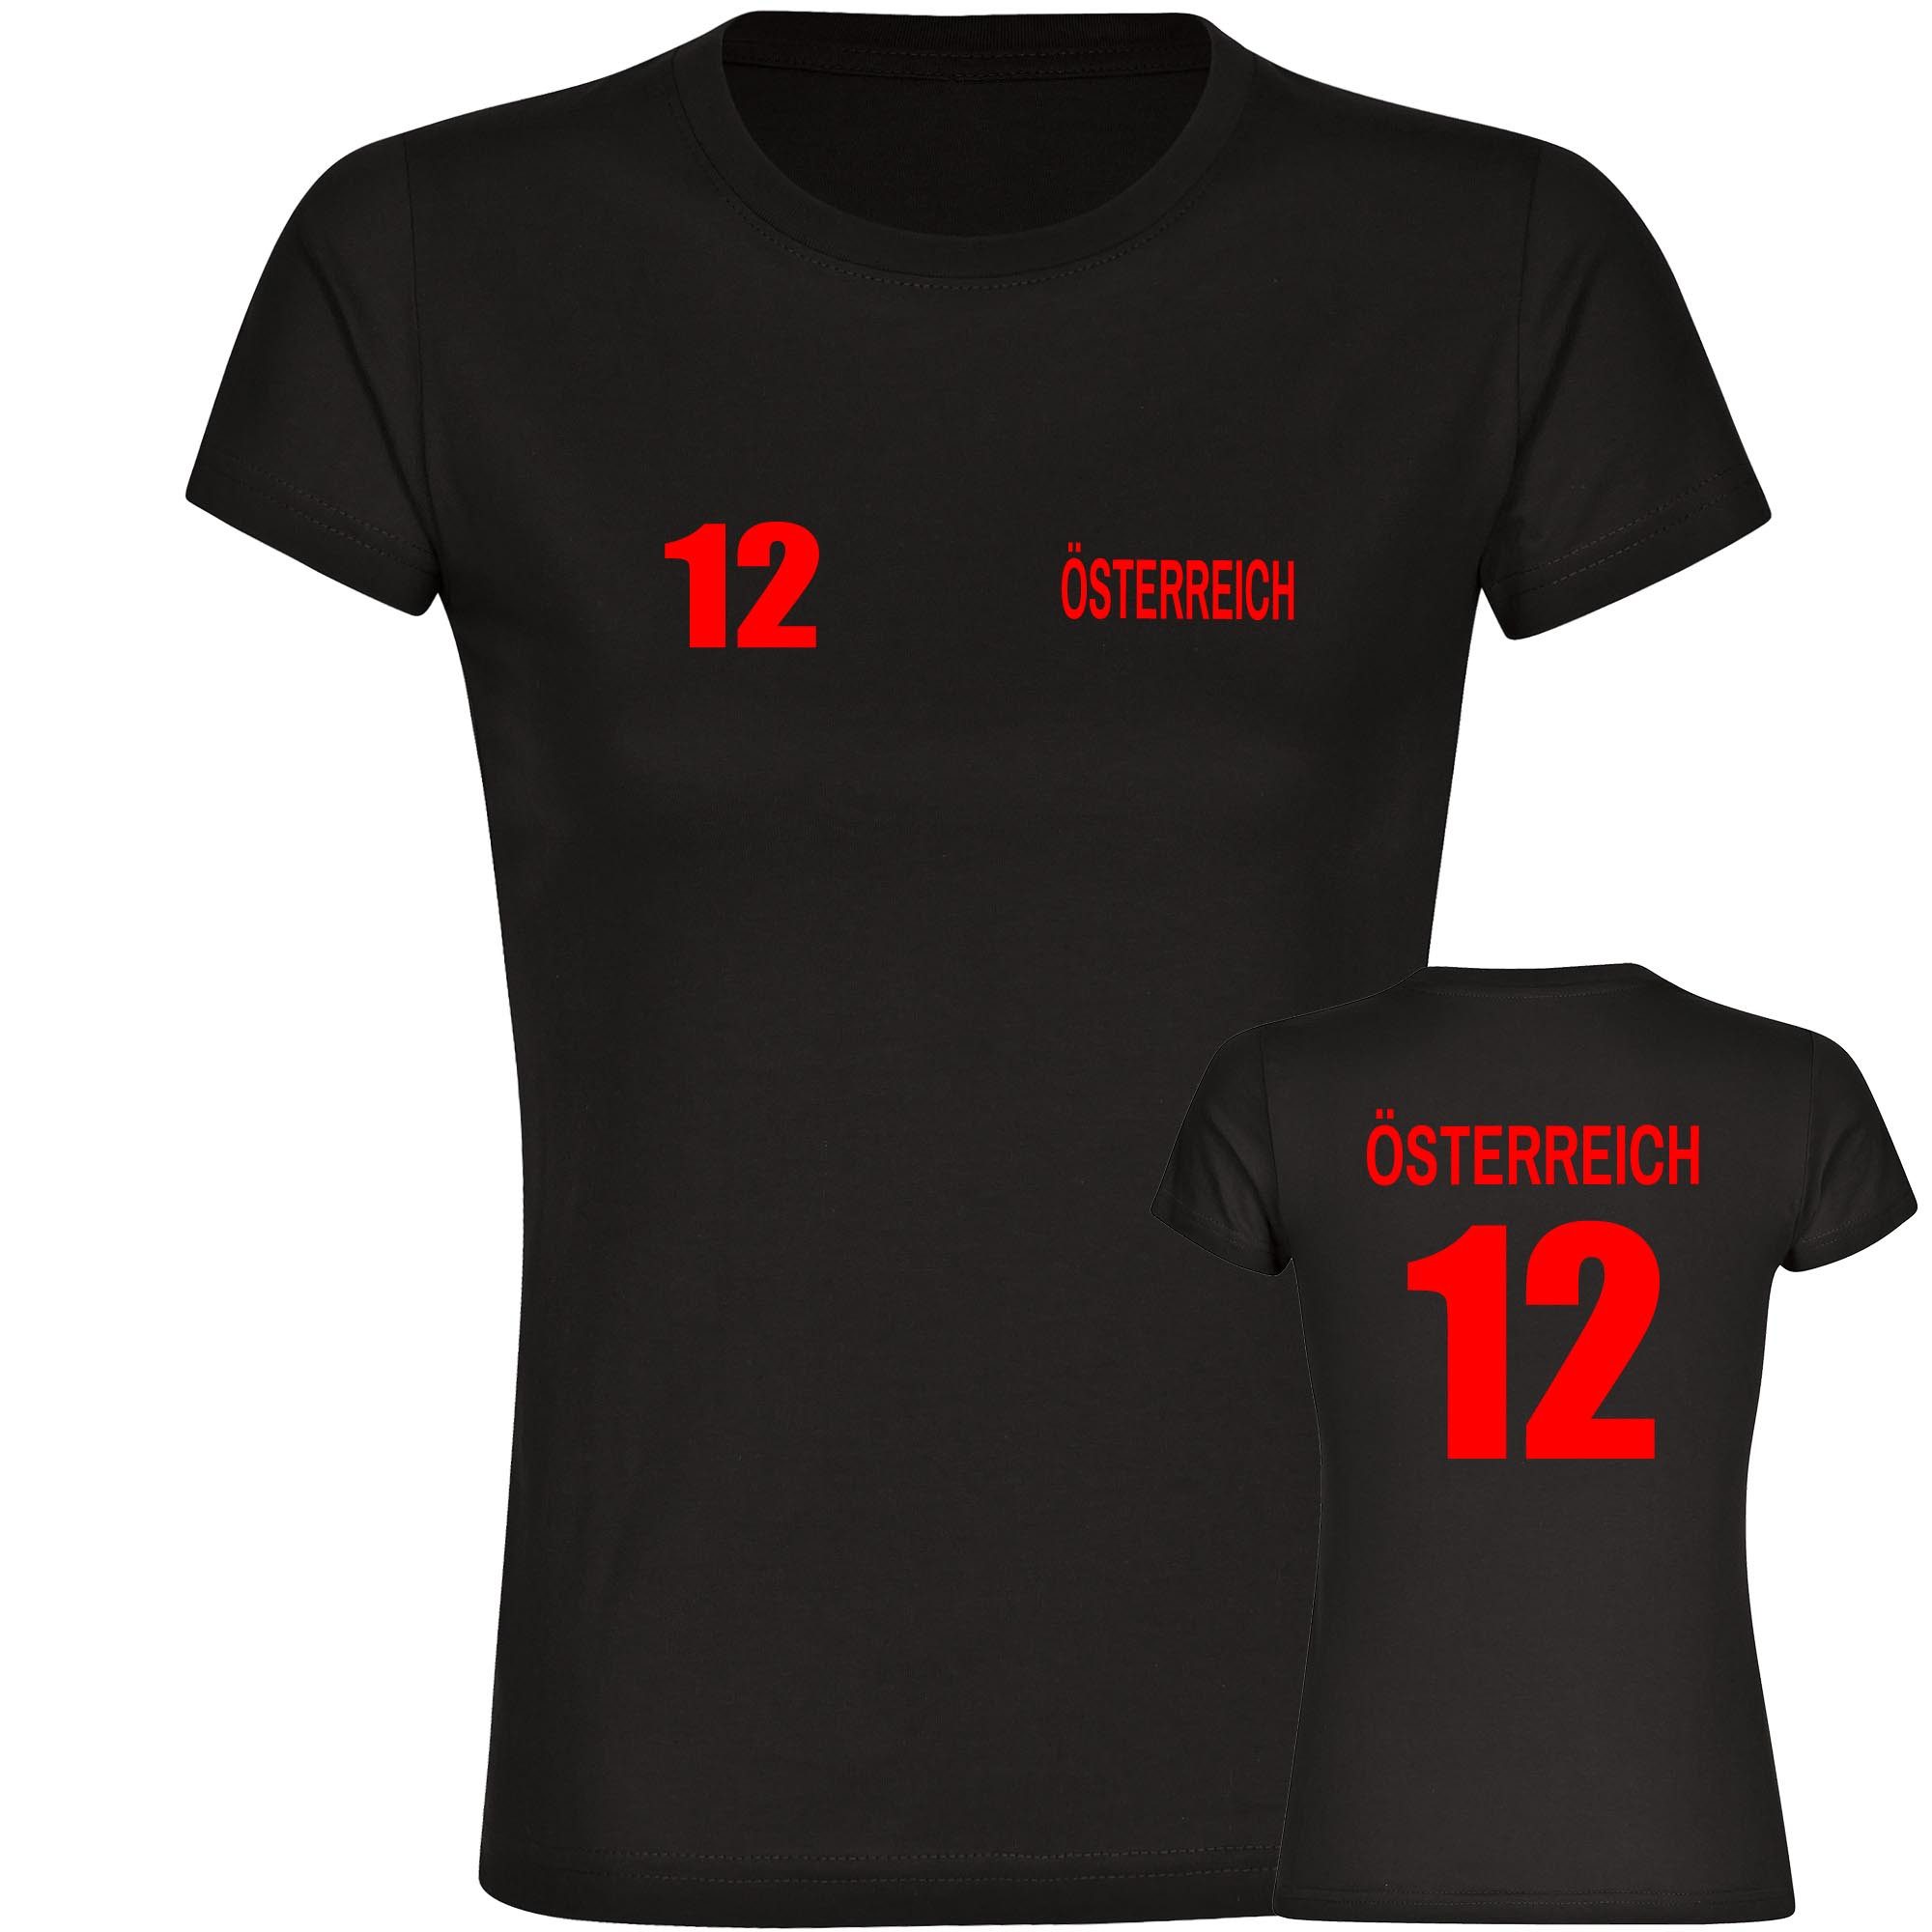 multifanshop T-Shirt Damen Österreich - Trikot 12 - Frauen